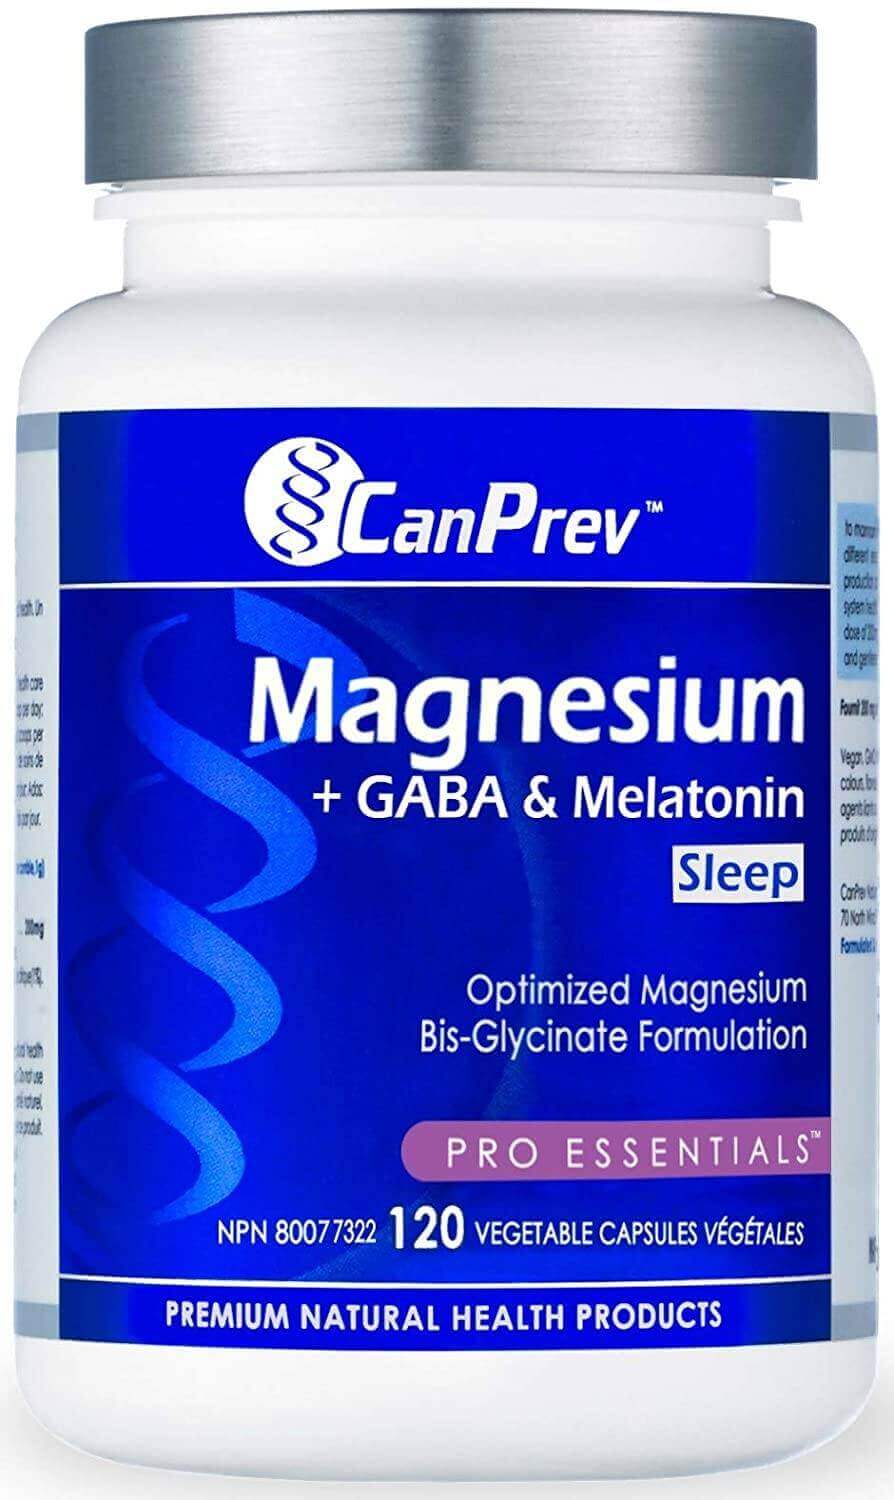 CanPrev Magnesium + GABA & Melatonin for Sleep 120 Veg Capsules - Nutrition Plus